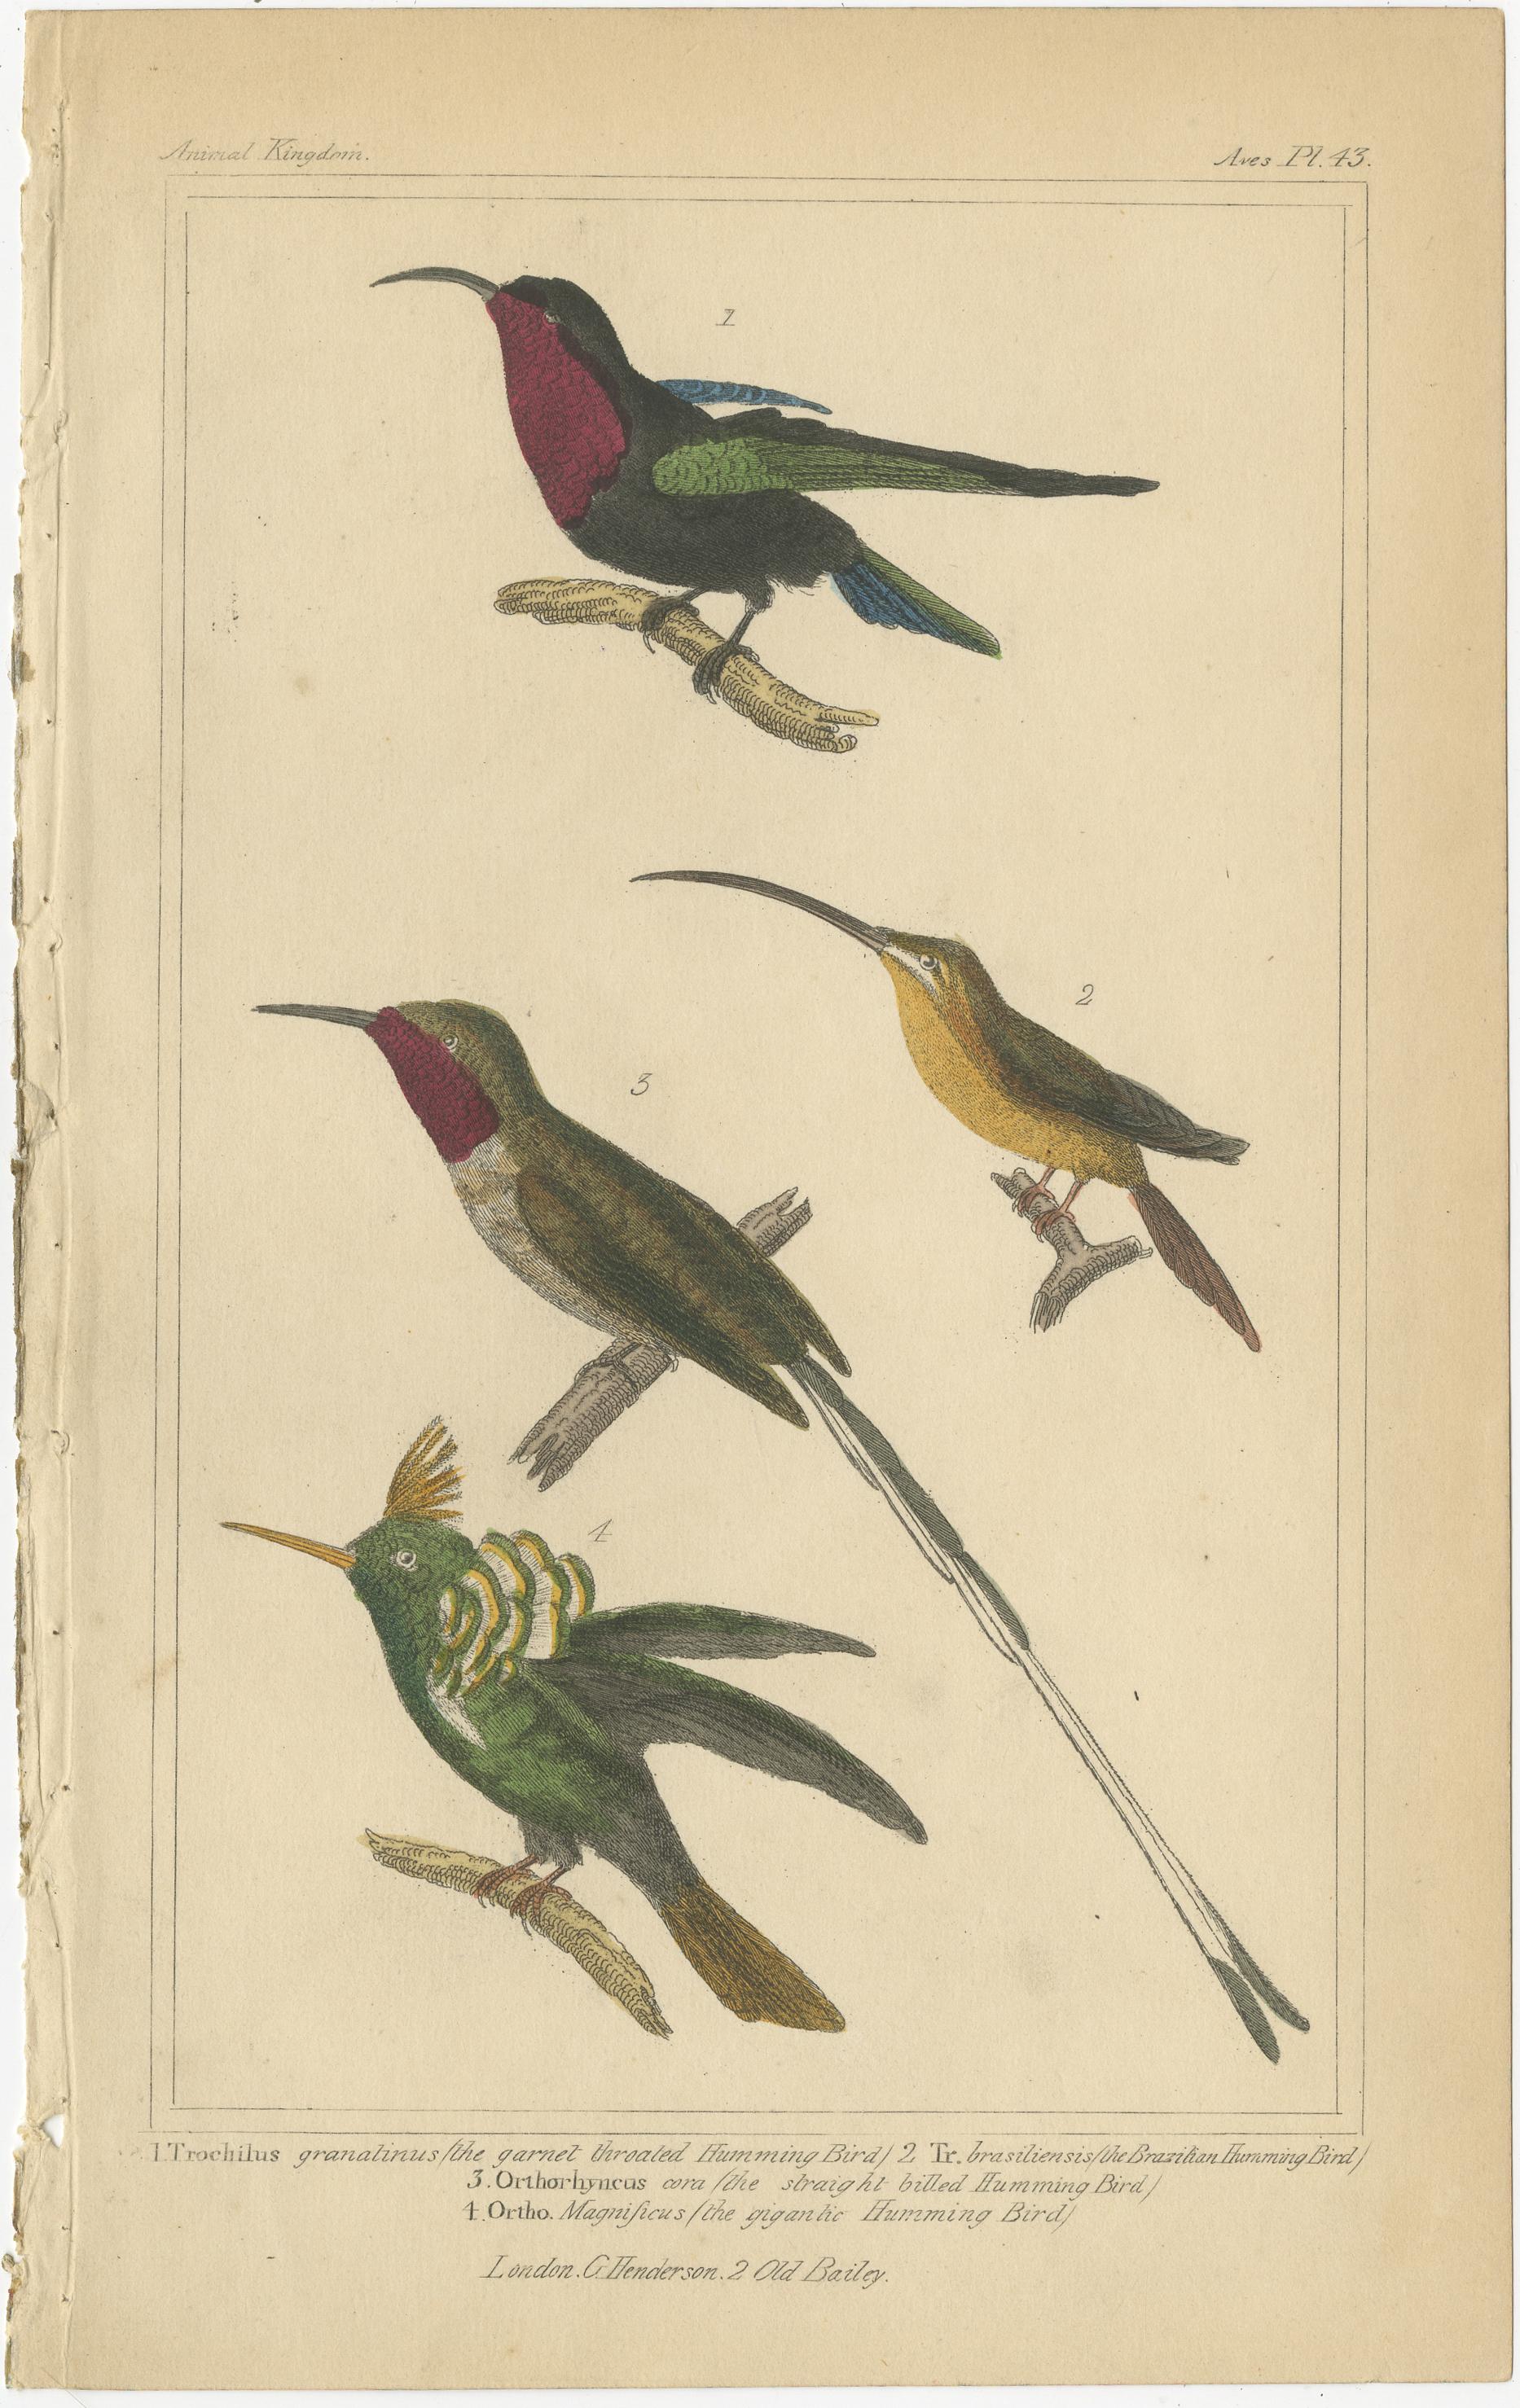 Ensemble de quatre gravures anciennes d'oiseaux comprenant des illustrations du perroquet cornu, de l'ara écarlate, du cacatoès, de l'oiseau de paradis, du colibri et autres. Ces empreintes proviennent du 